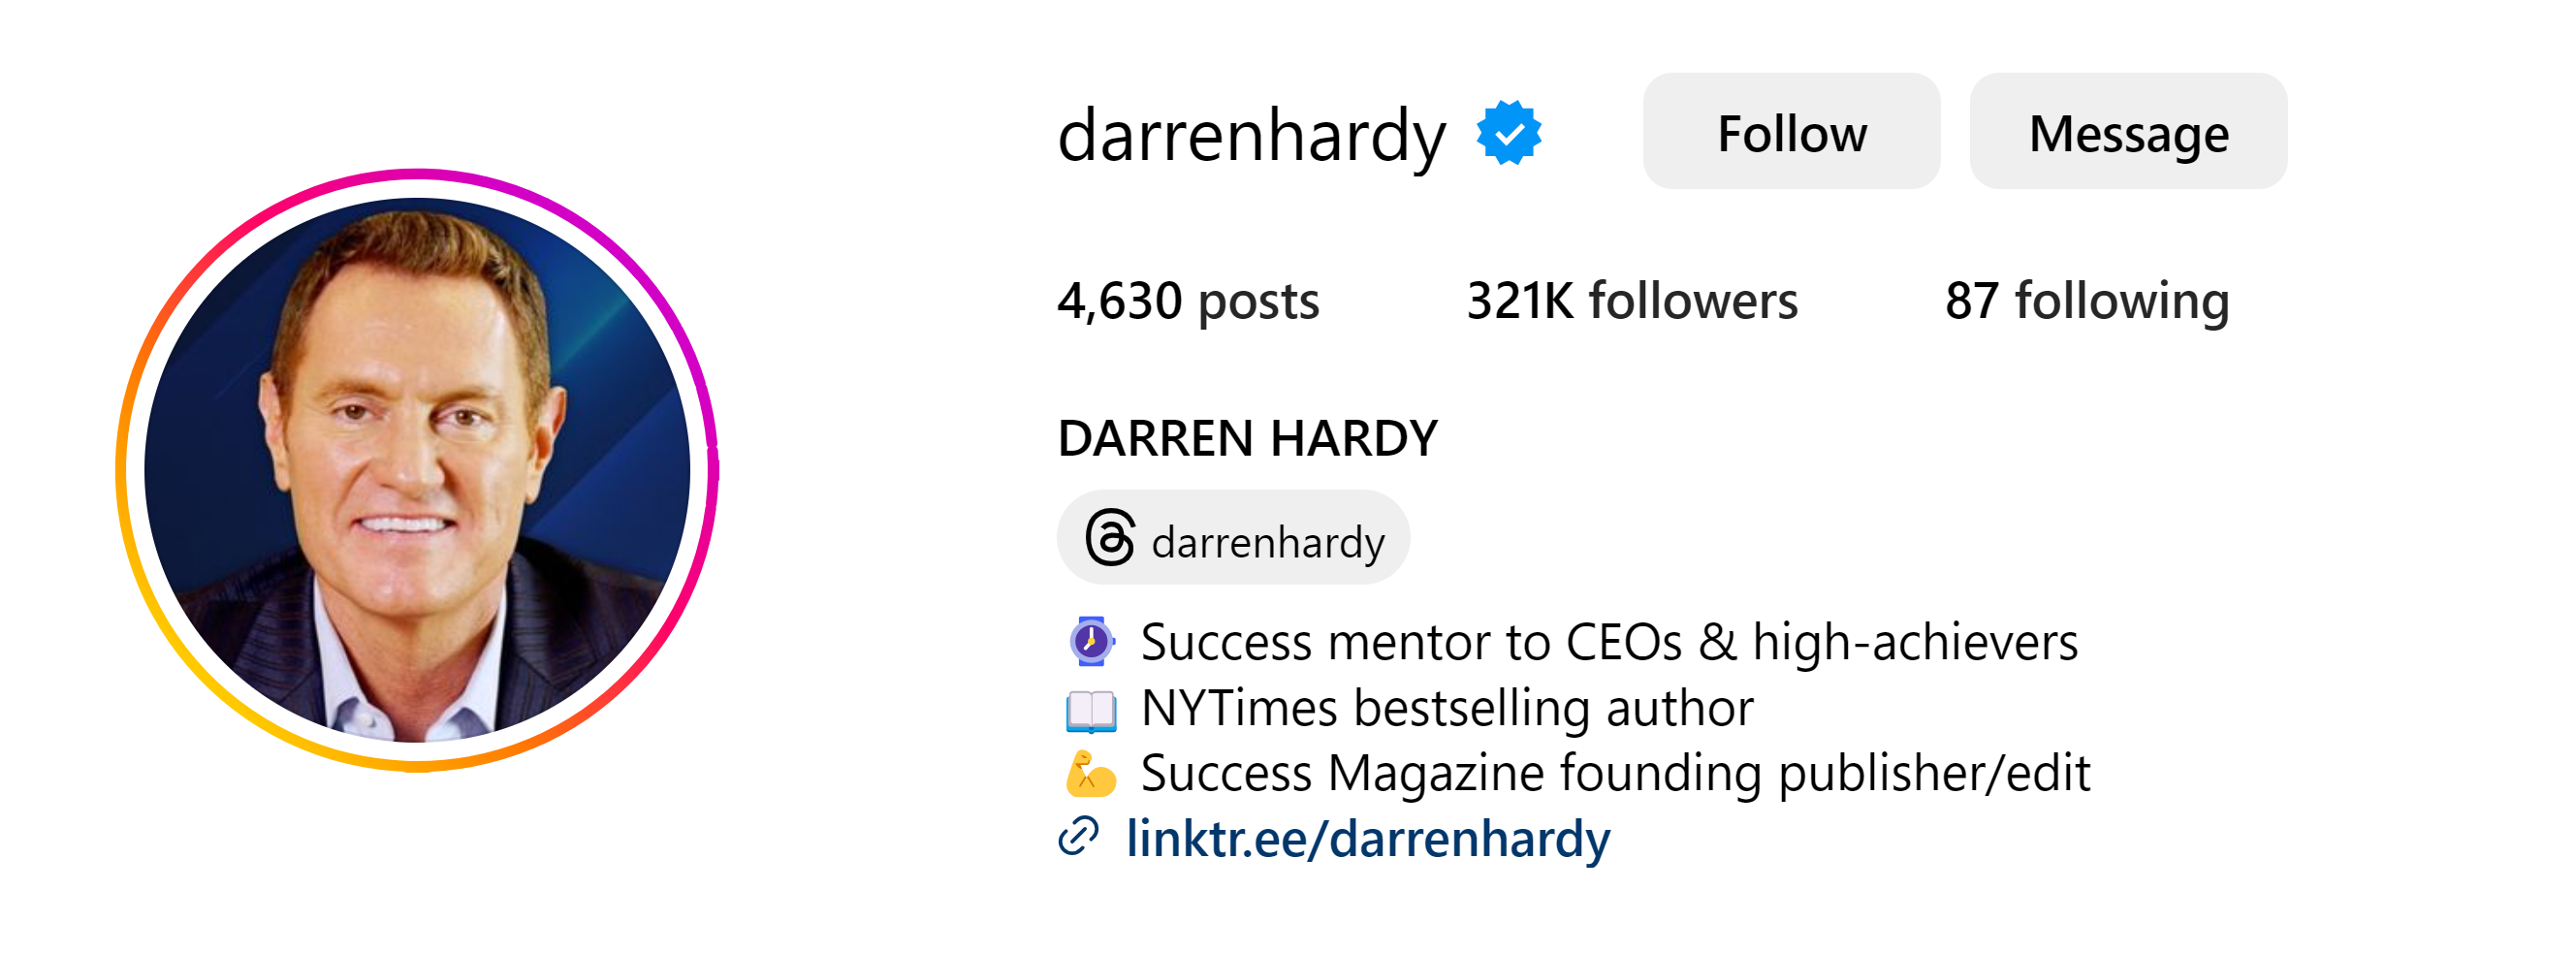 Who is Darren Hardy